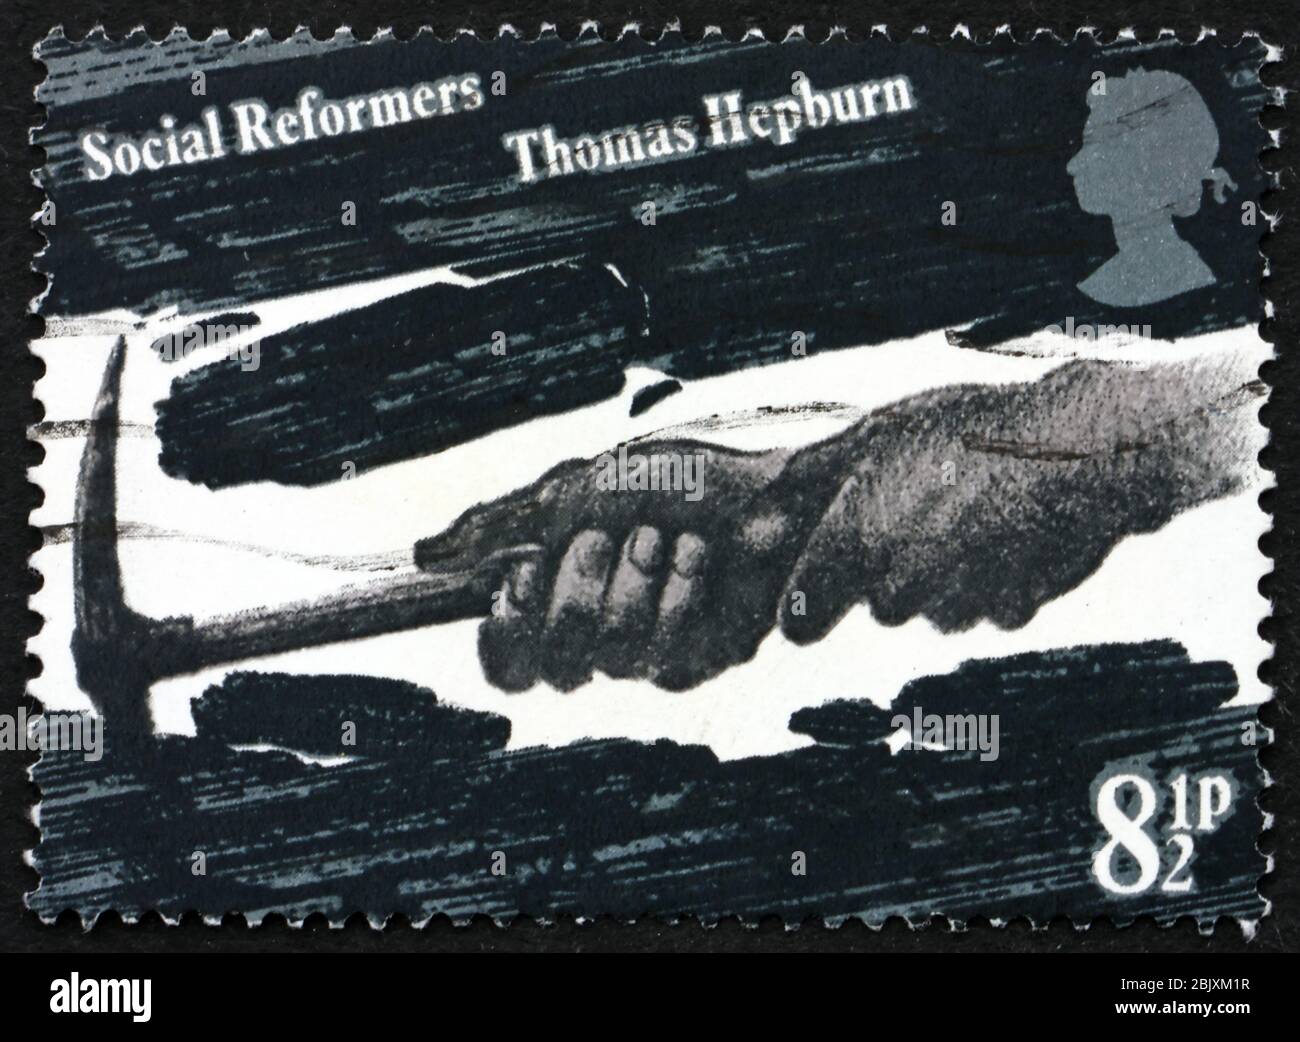 GROSSBRITANNIEN - UM 1976: Eine in Großbritannien gedruckte Briefmarke zeigt die Hände von Coal Miner, die Thomas Hepburn, Social Reformer, um 1976 gewidmet ist Stockfoto